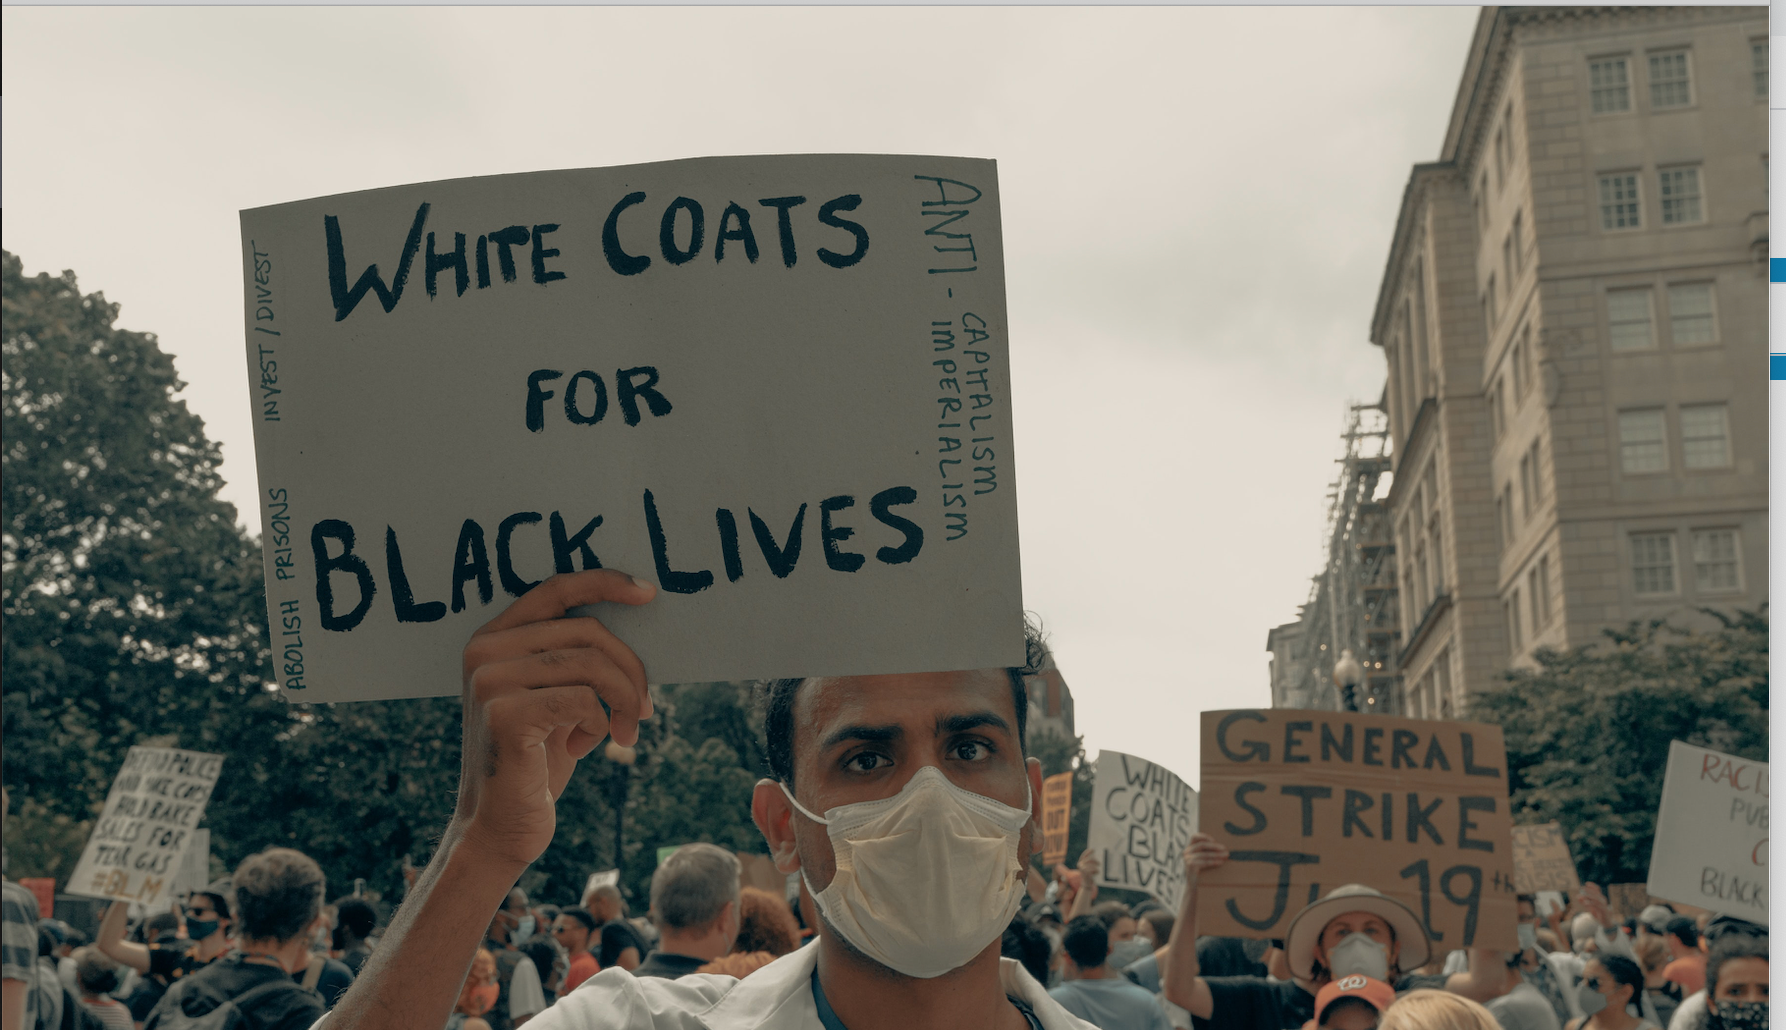 white coats for black lives